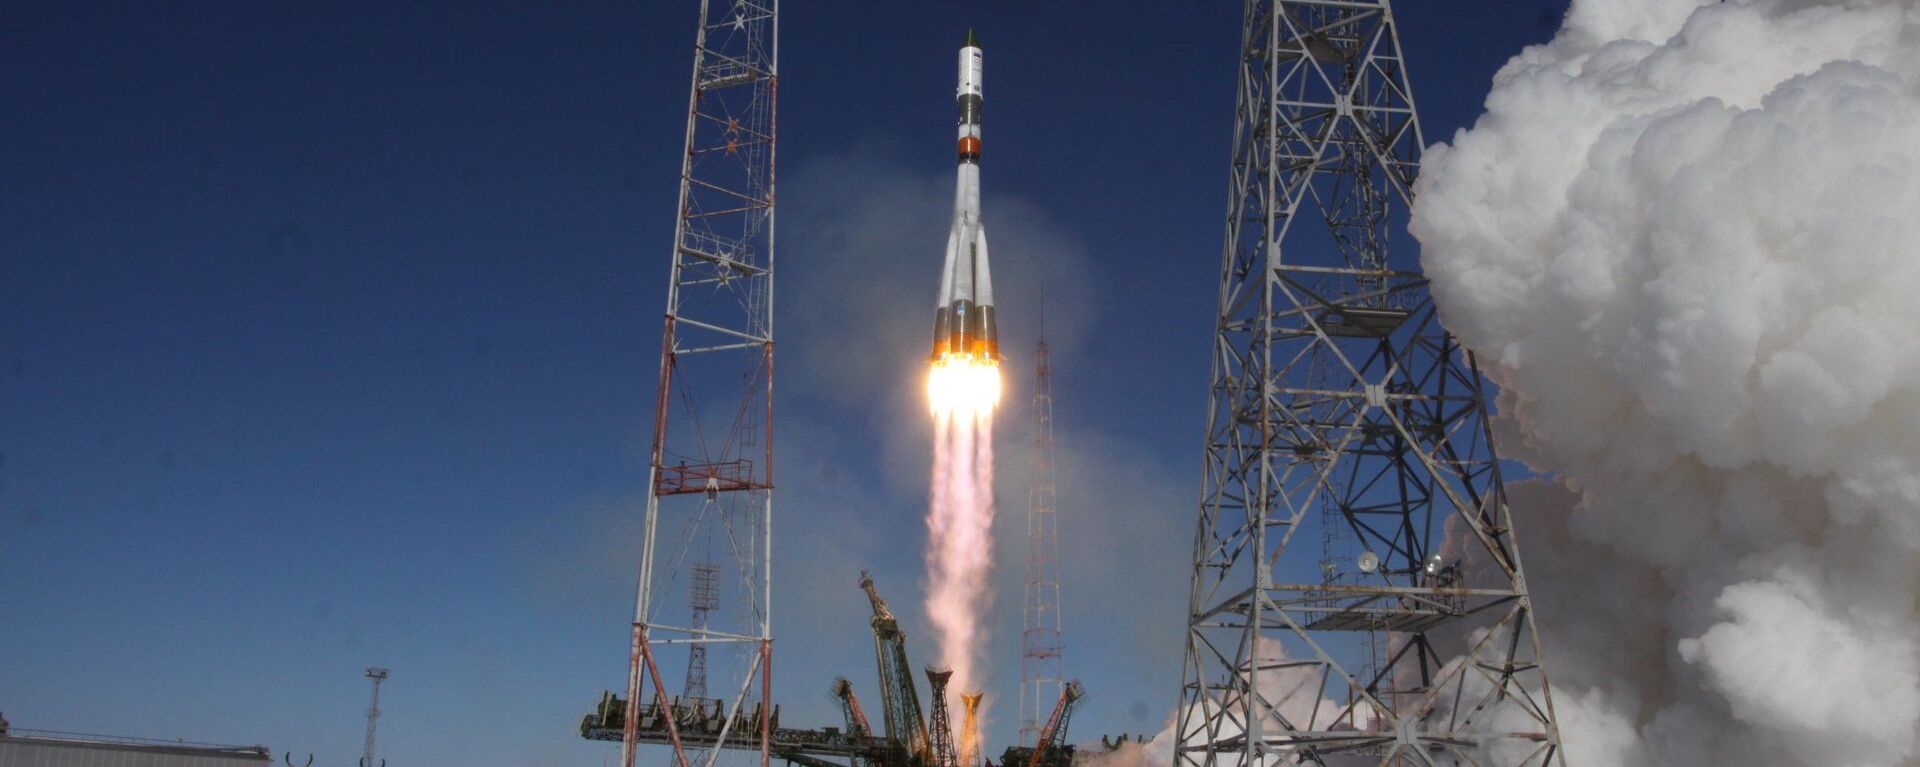 مركبة الفضاء الروسية بروغرس ام اس تنطلق بنجاح إلى محطة الفضاء الدولية، وذلك لأول مرة بعد وقوع الحادث في ديسمير/ كانون الأول من العام الماضي، 22 فبراير/ شباط 2017 - سبوتنيك عربي, 1920, 04.12.2023